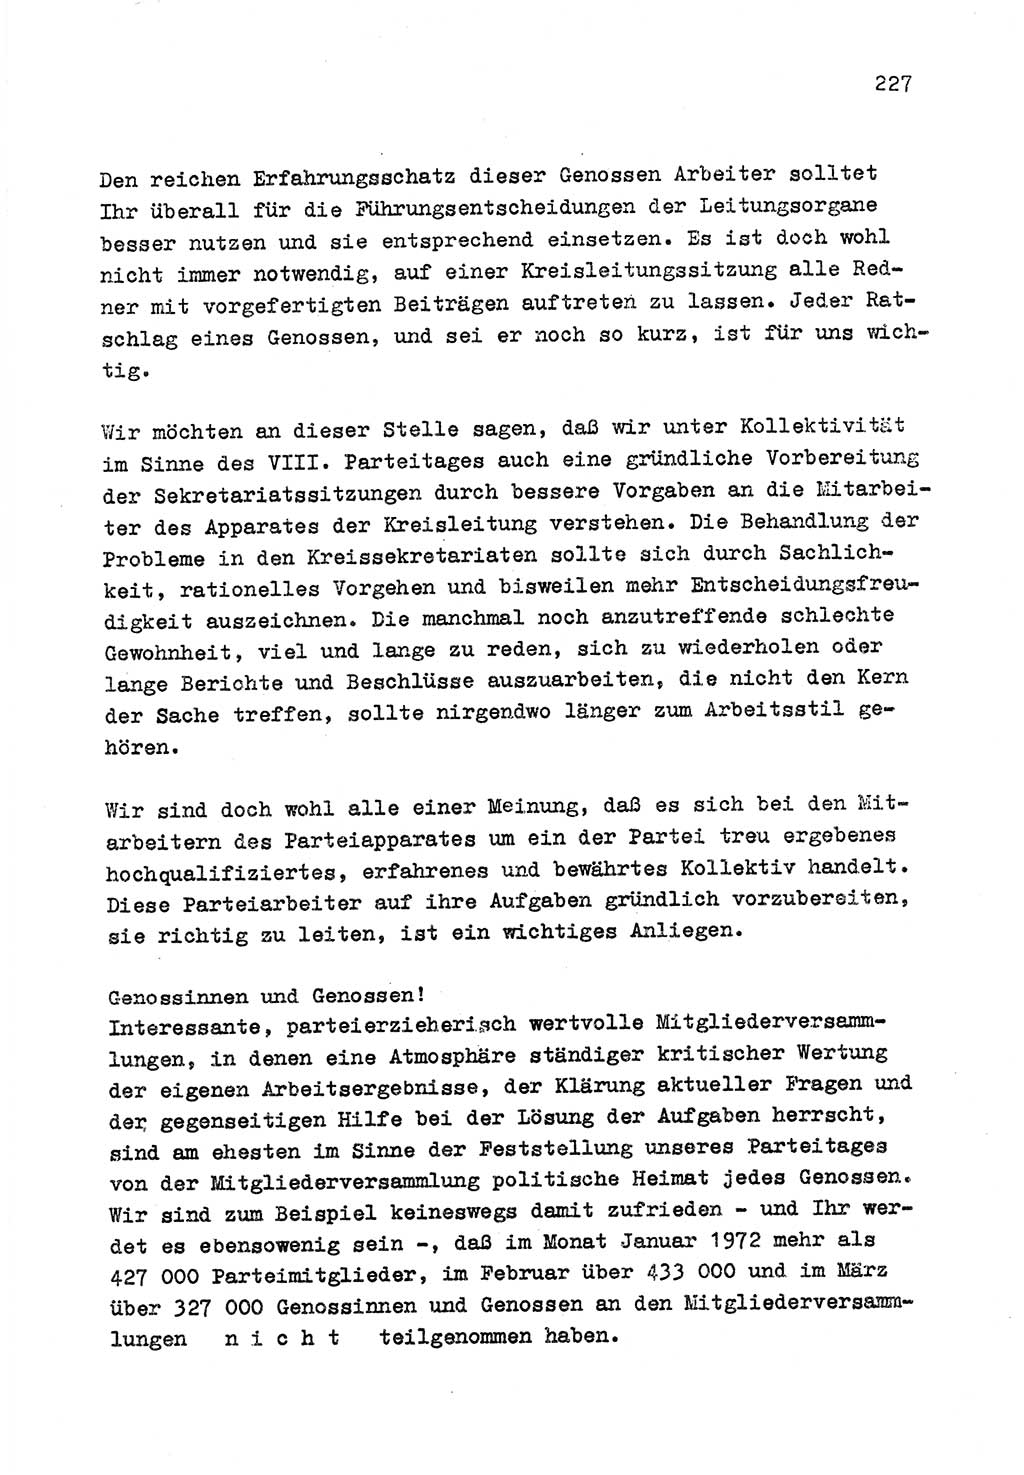 Zu Fragen der Parteiarbeit [Sozialistische Einheitspartei Deutschlands (SED) Deutsche Demokratische Republik (DDR)] 1979, Seite 227 (Fr. PA SED DDR 1979, S. 227)